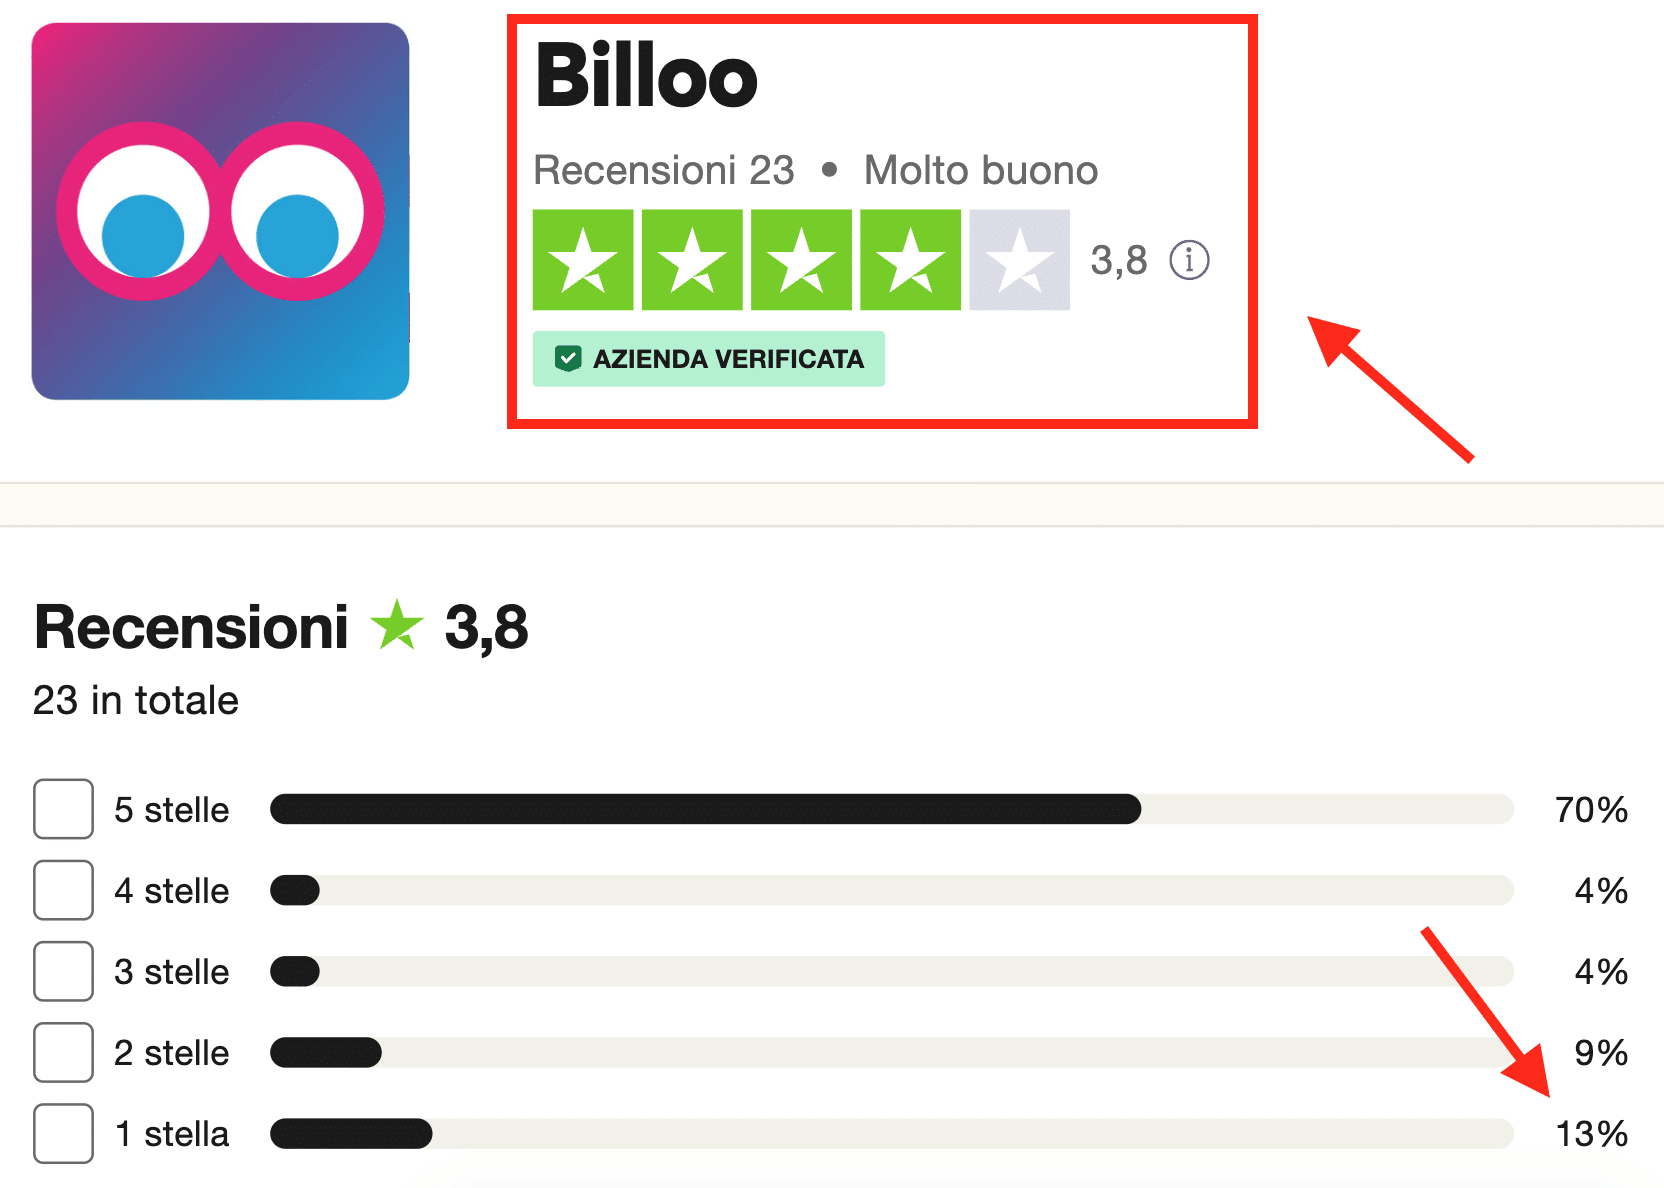 Billoo ha poche recensioni e alcune sono negative